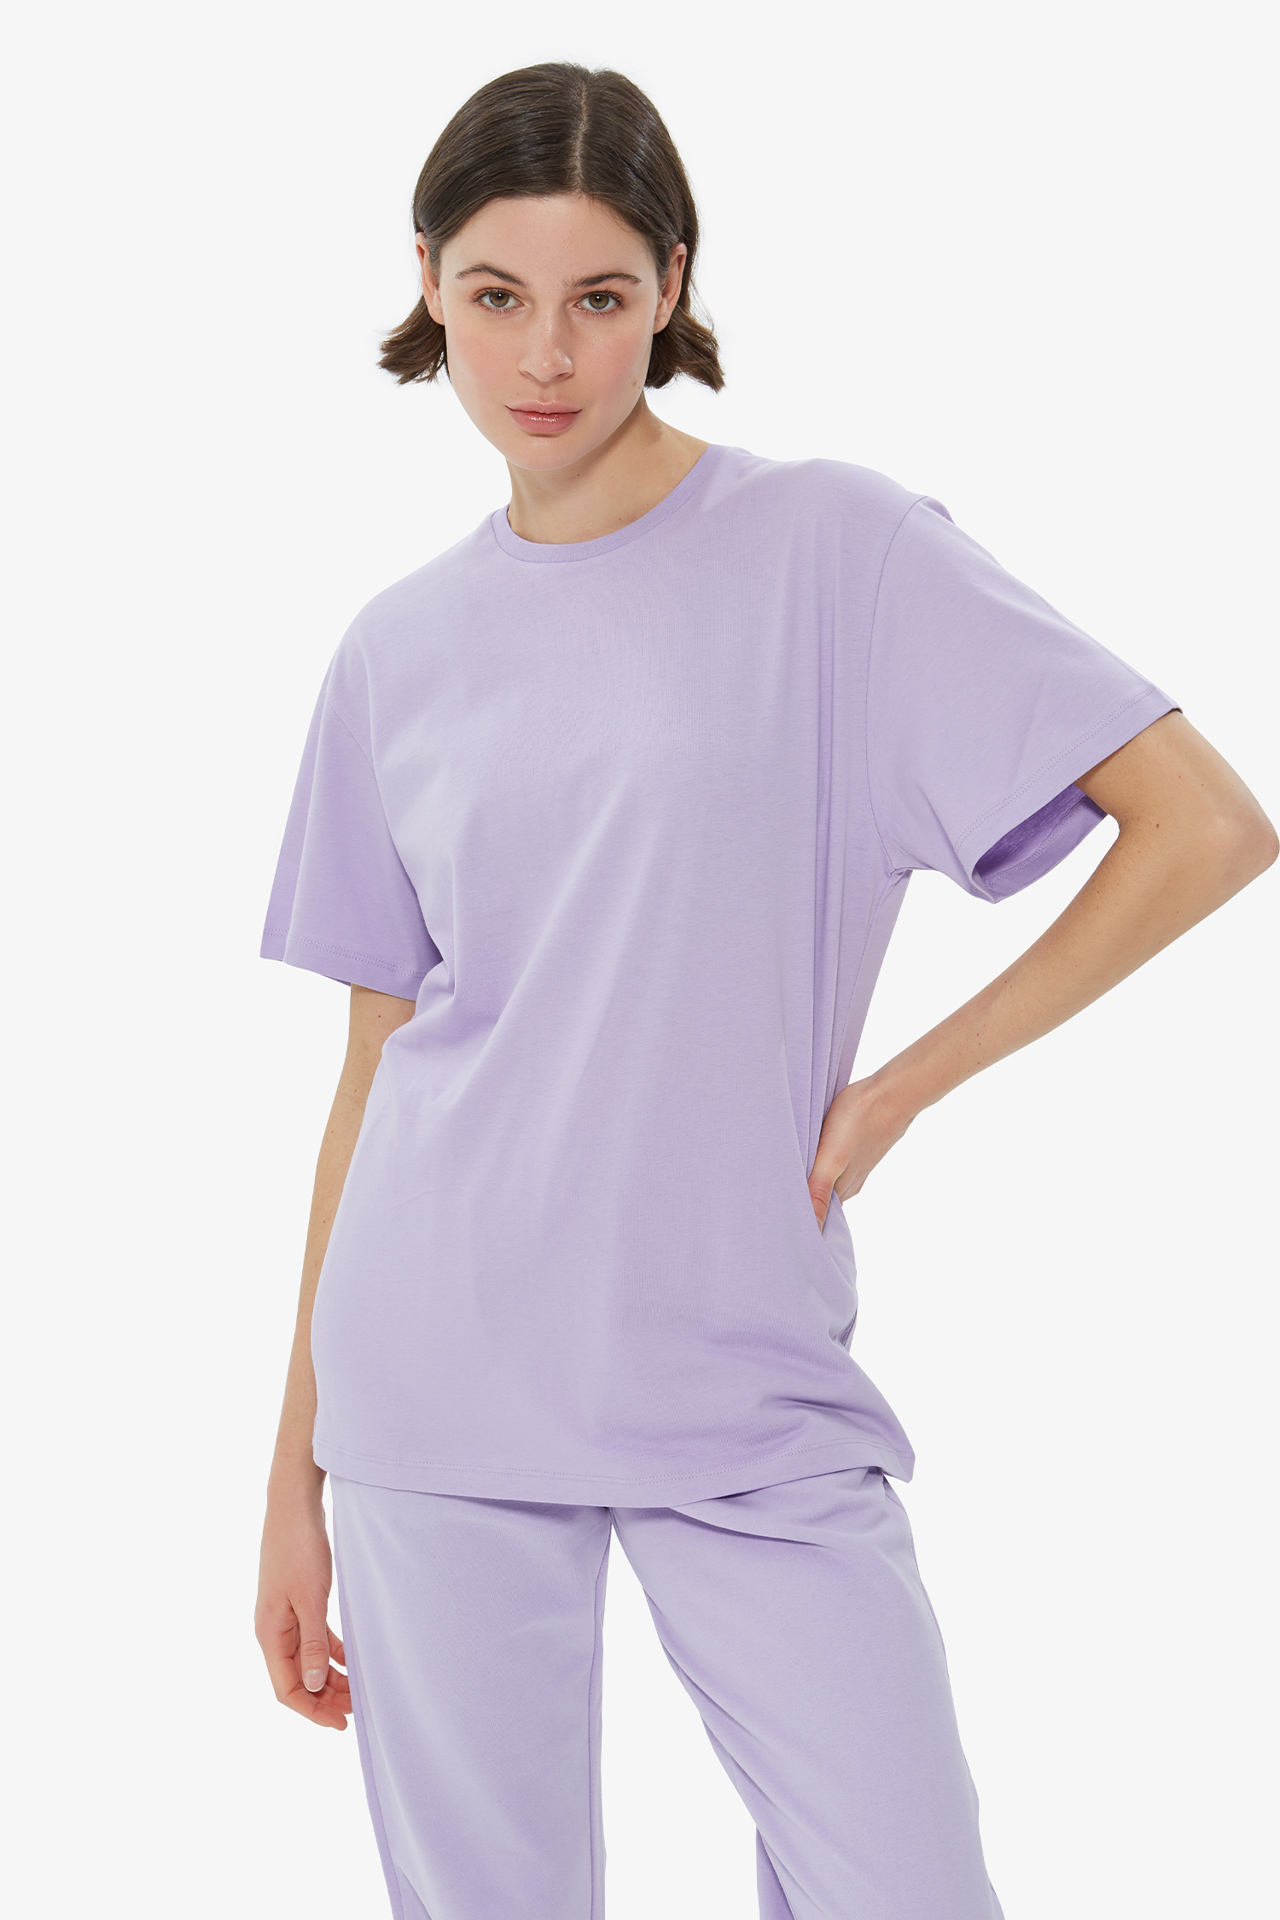 Tshirt | - Back T-Shirt - Bianca Lilac Printed Dahlia